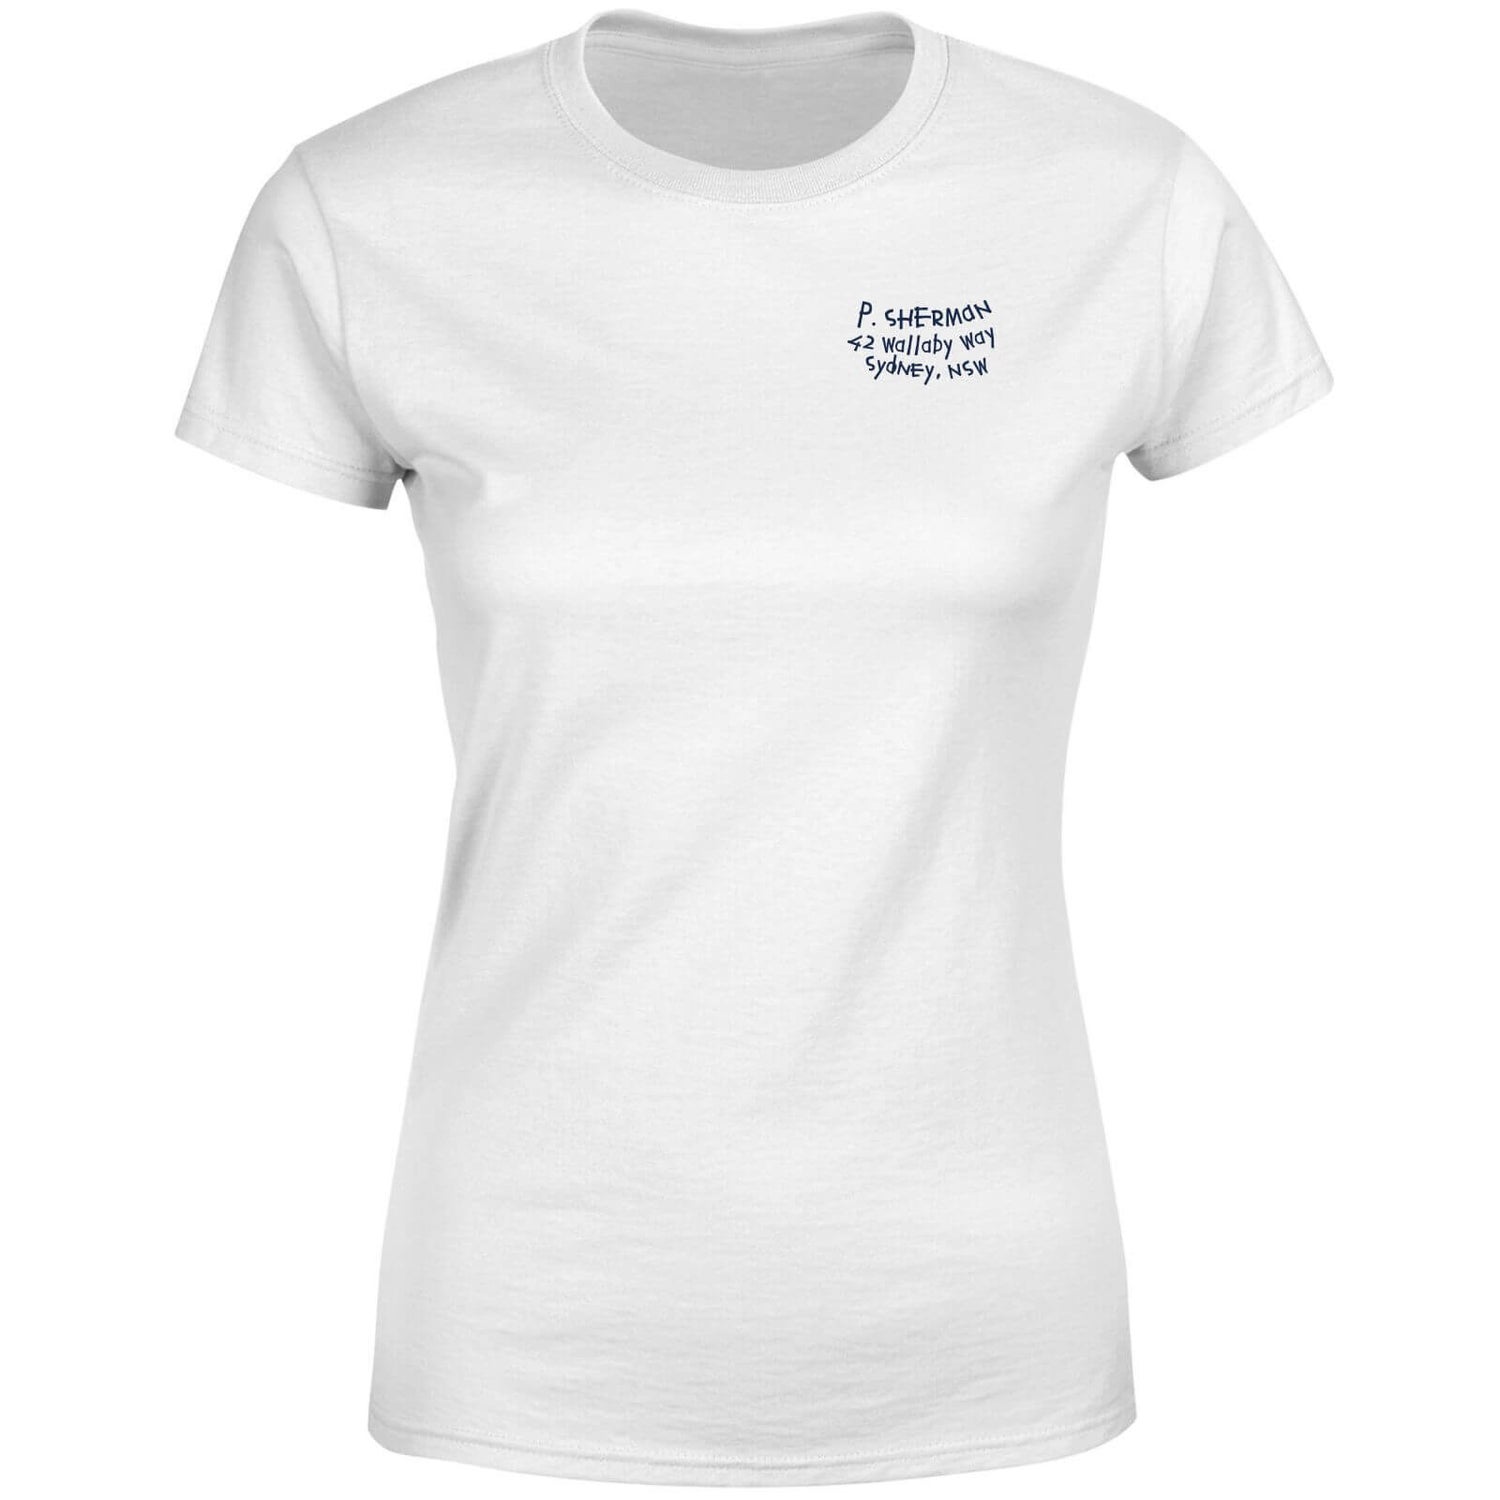 Finding Nemo P.Sherman 42 Wallaby Way Women's T-Shirt - White